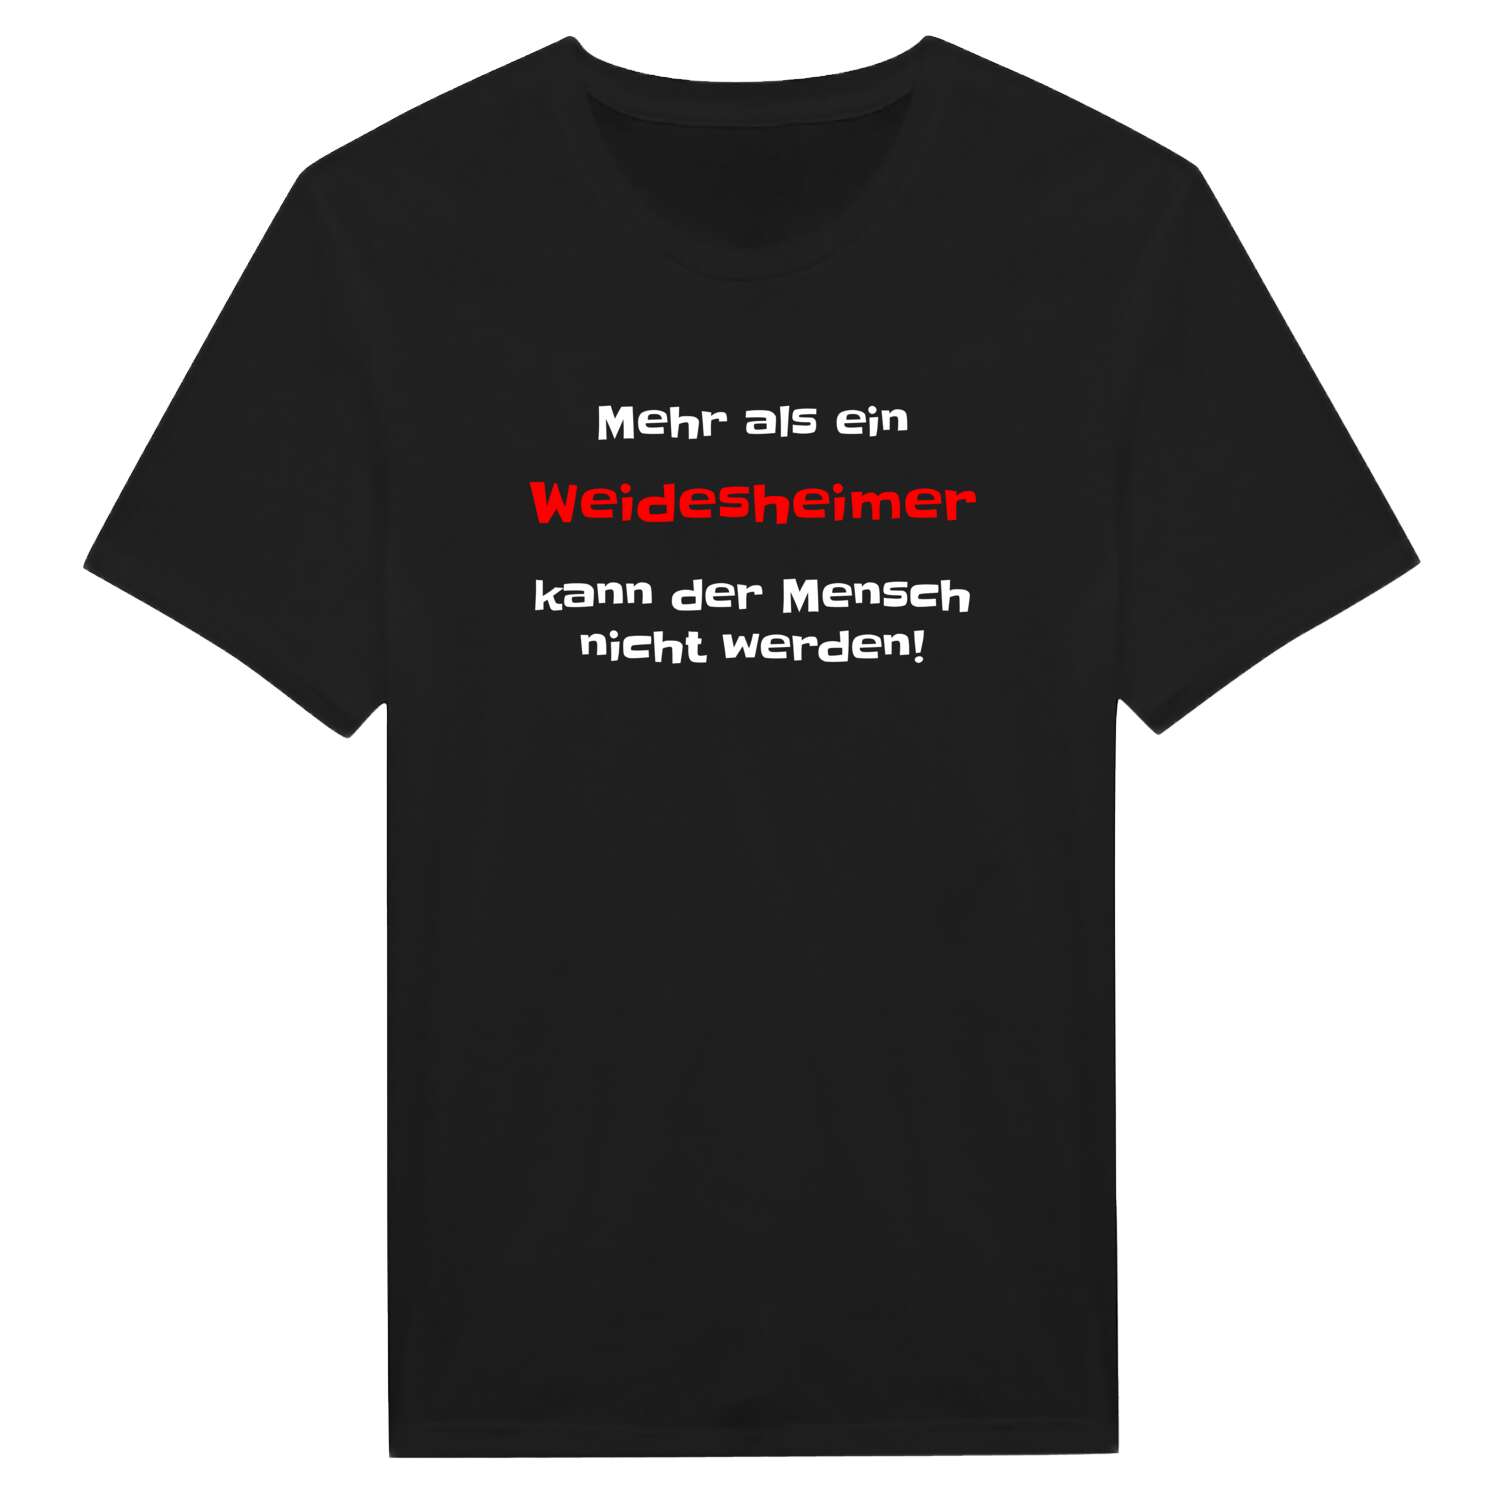 Weidesheim T-Shirt »Mehr als ein«